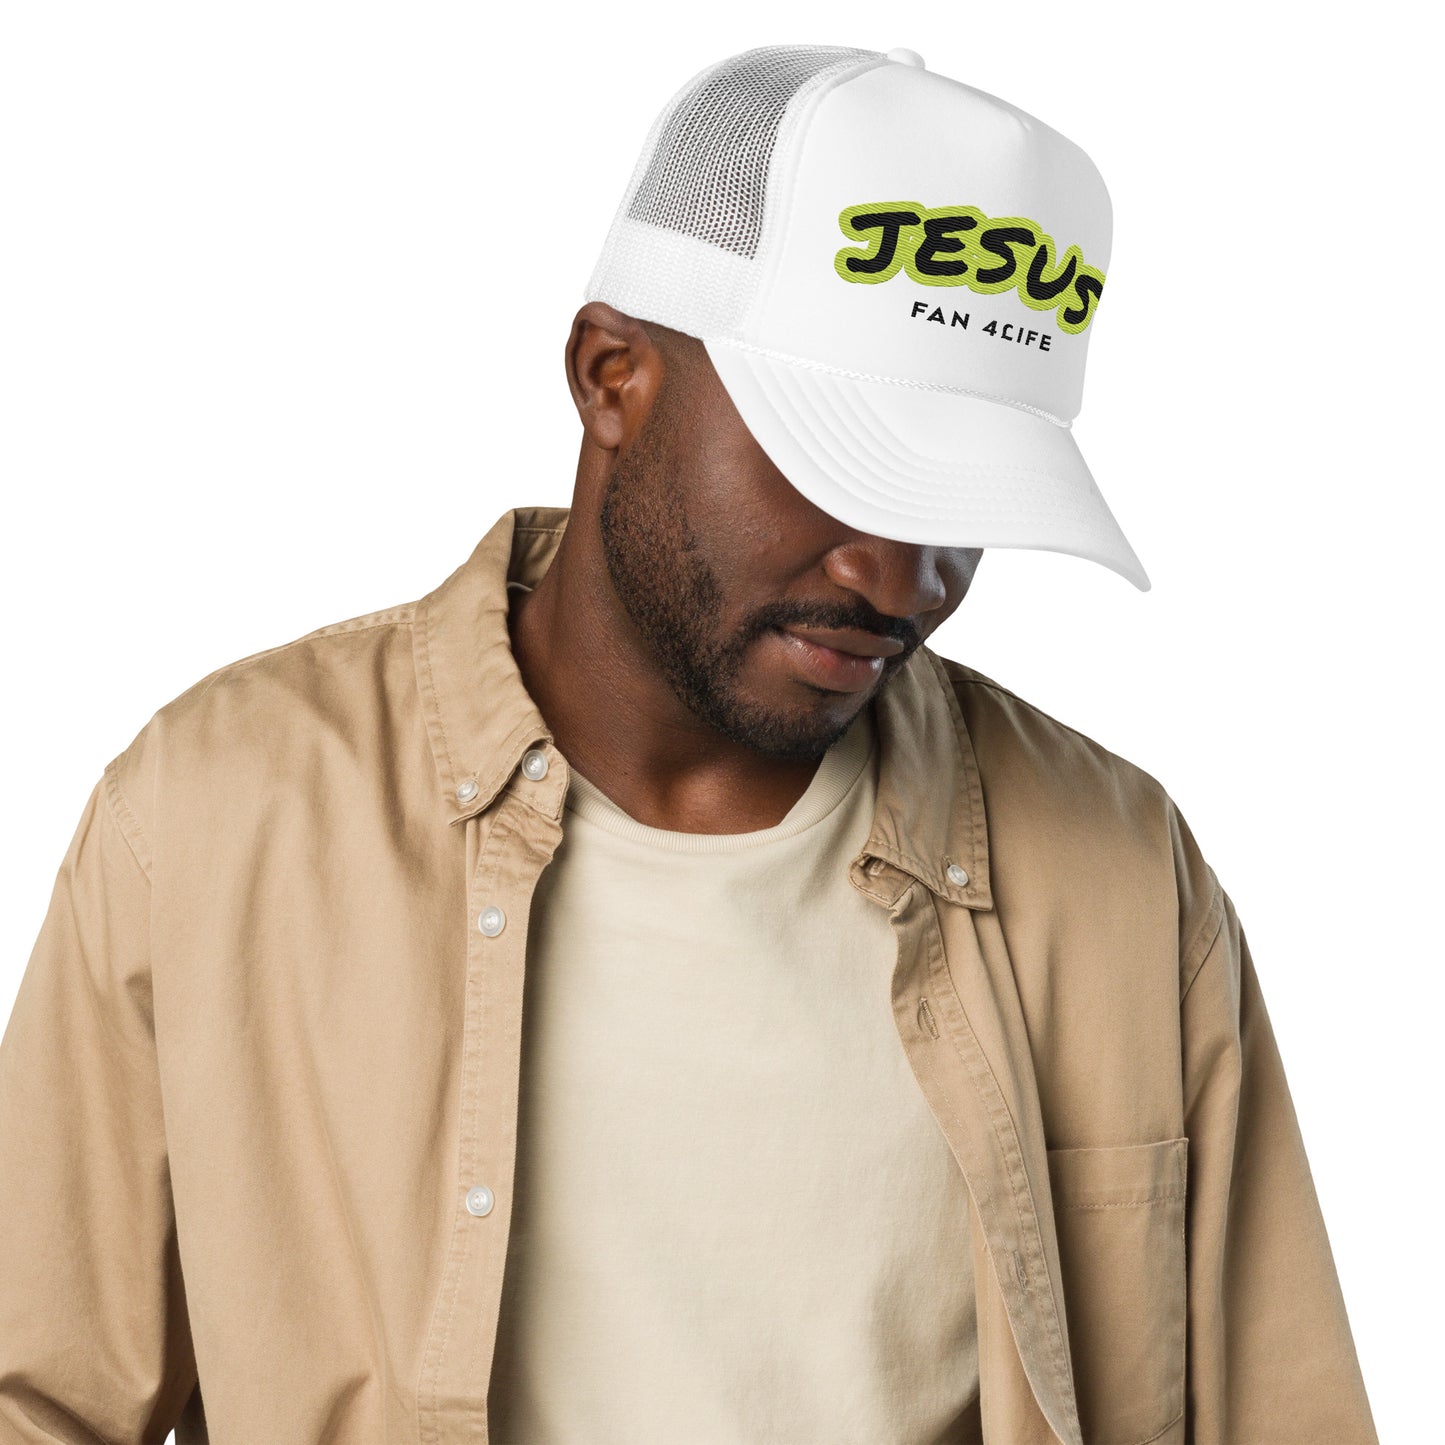 Jesus Fan 4Life- Foam trucker hat